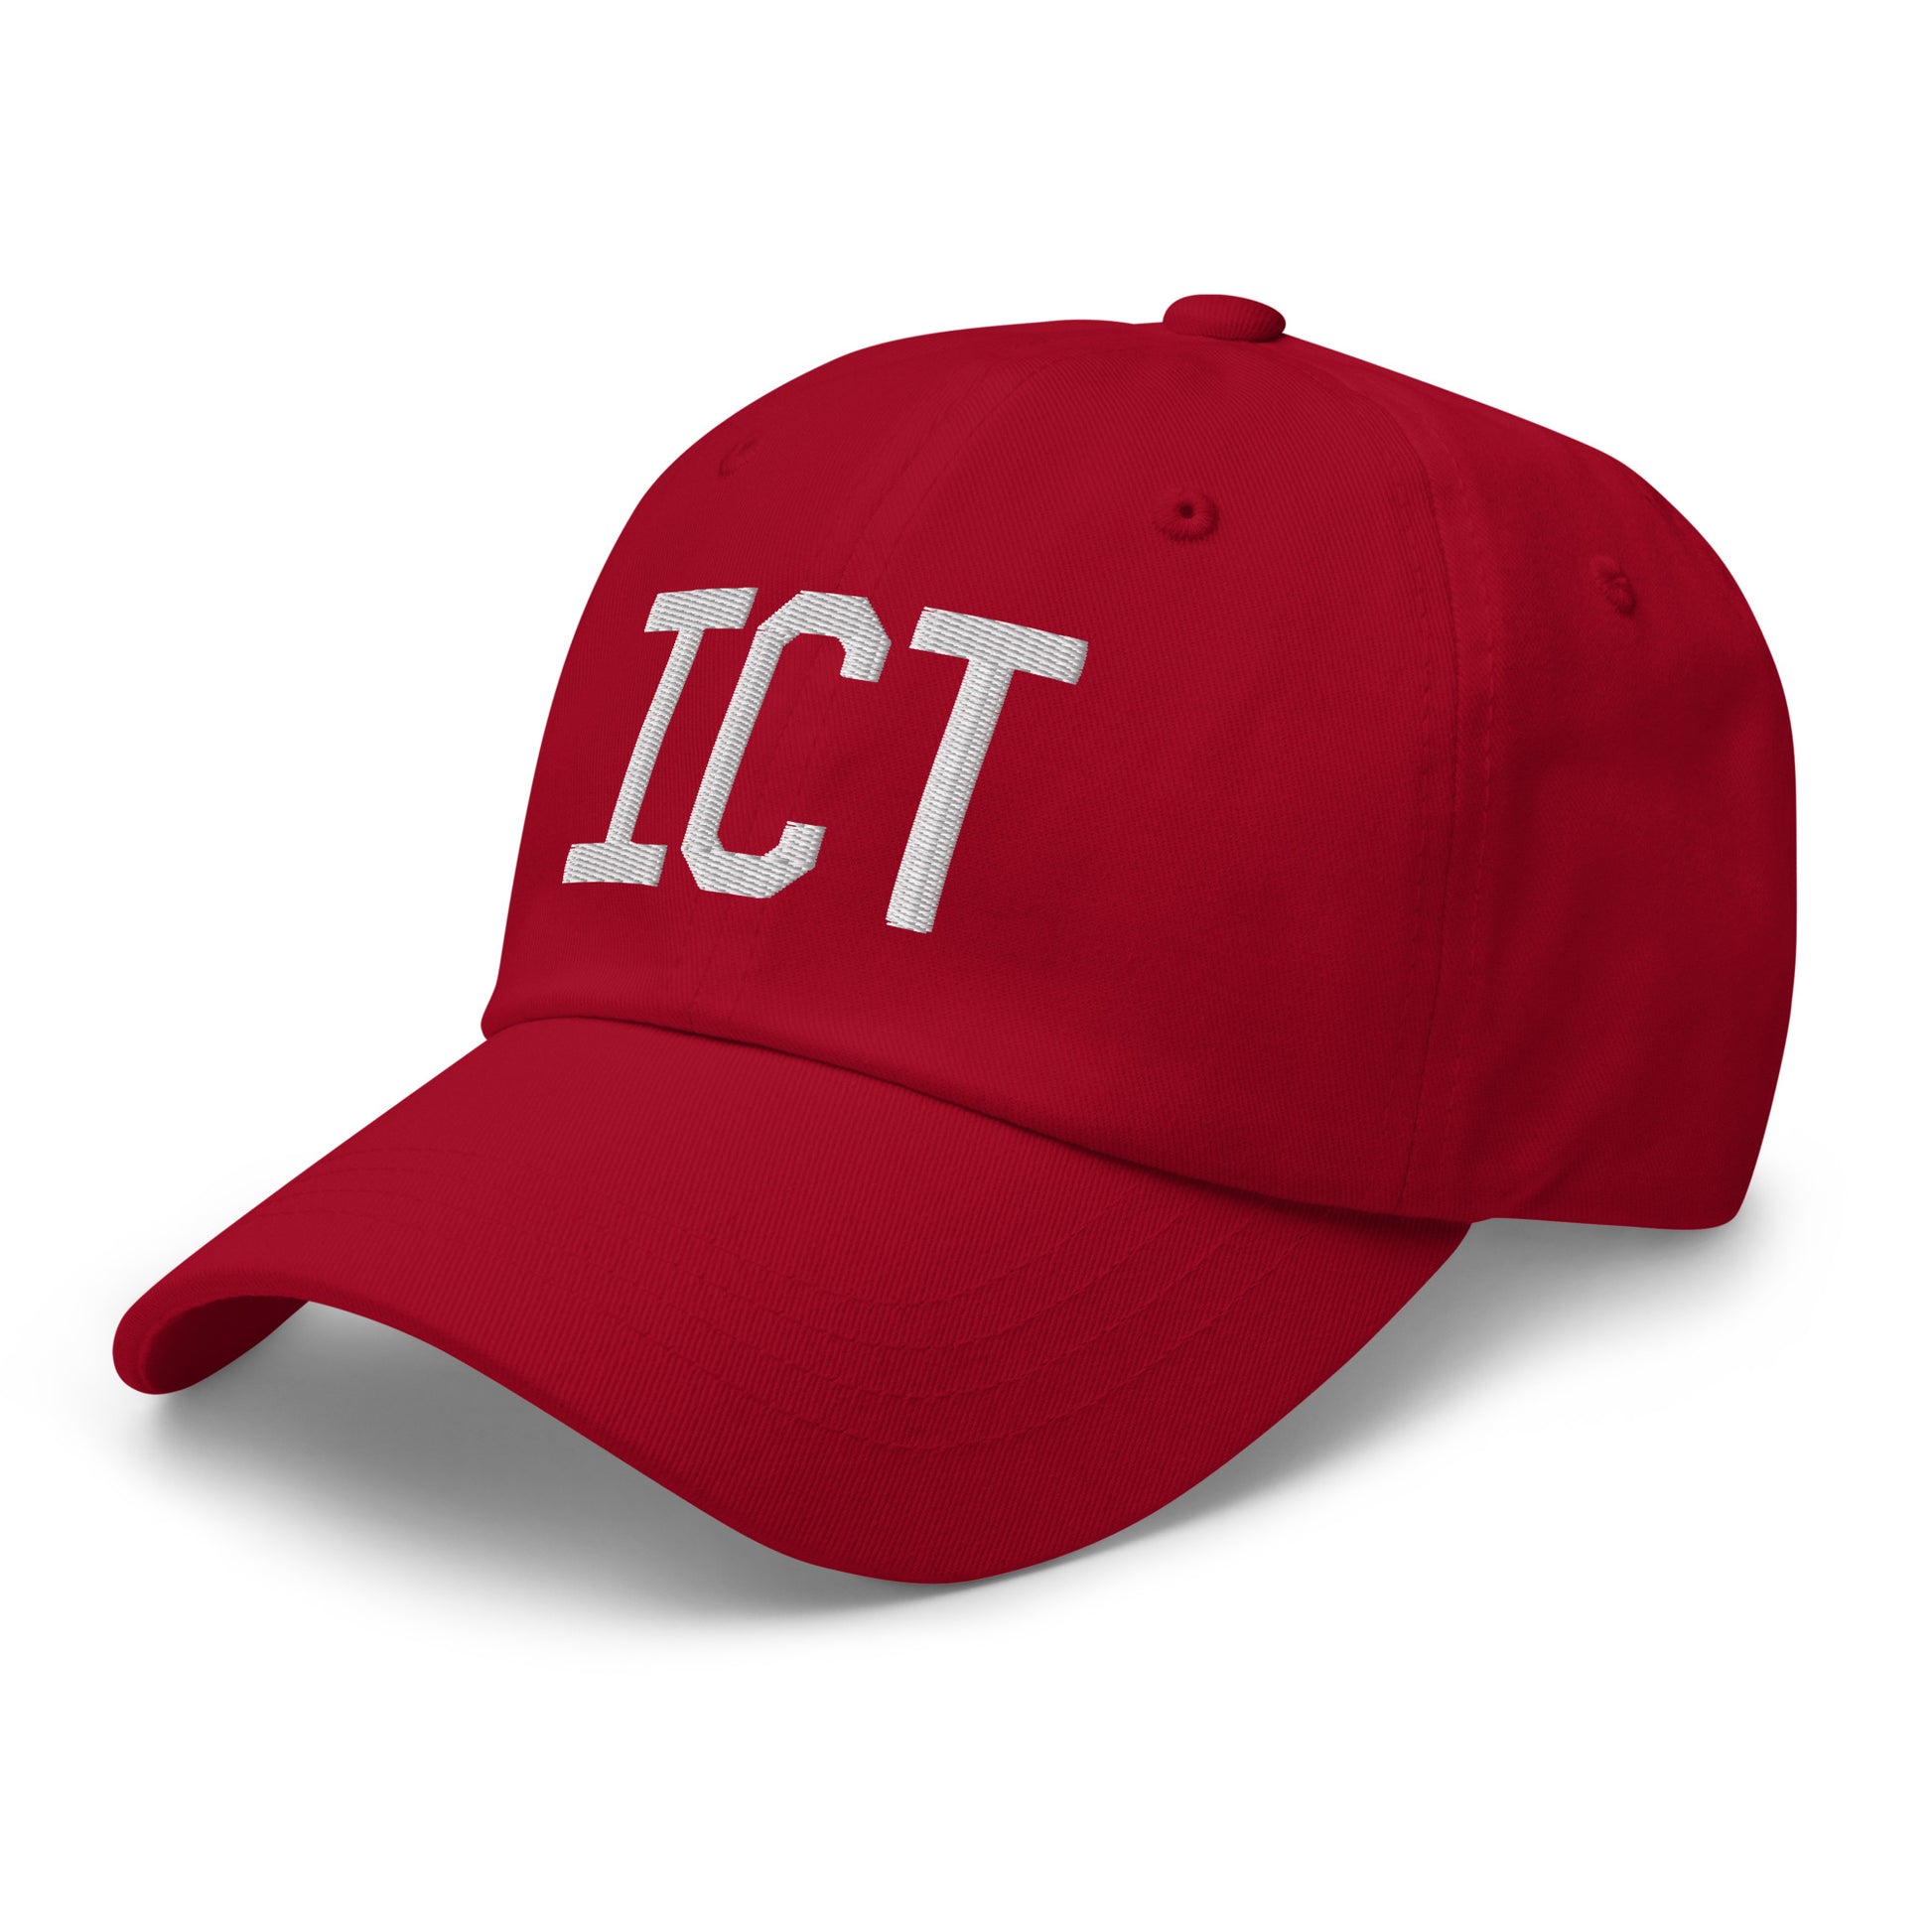 Airport Code Baseball Cap - White • ICT Wichita • YHM Designs - Image 21